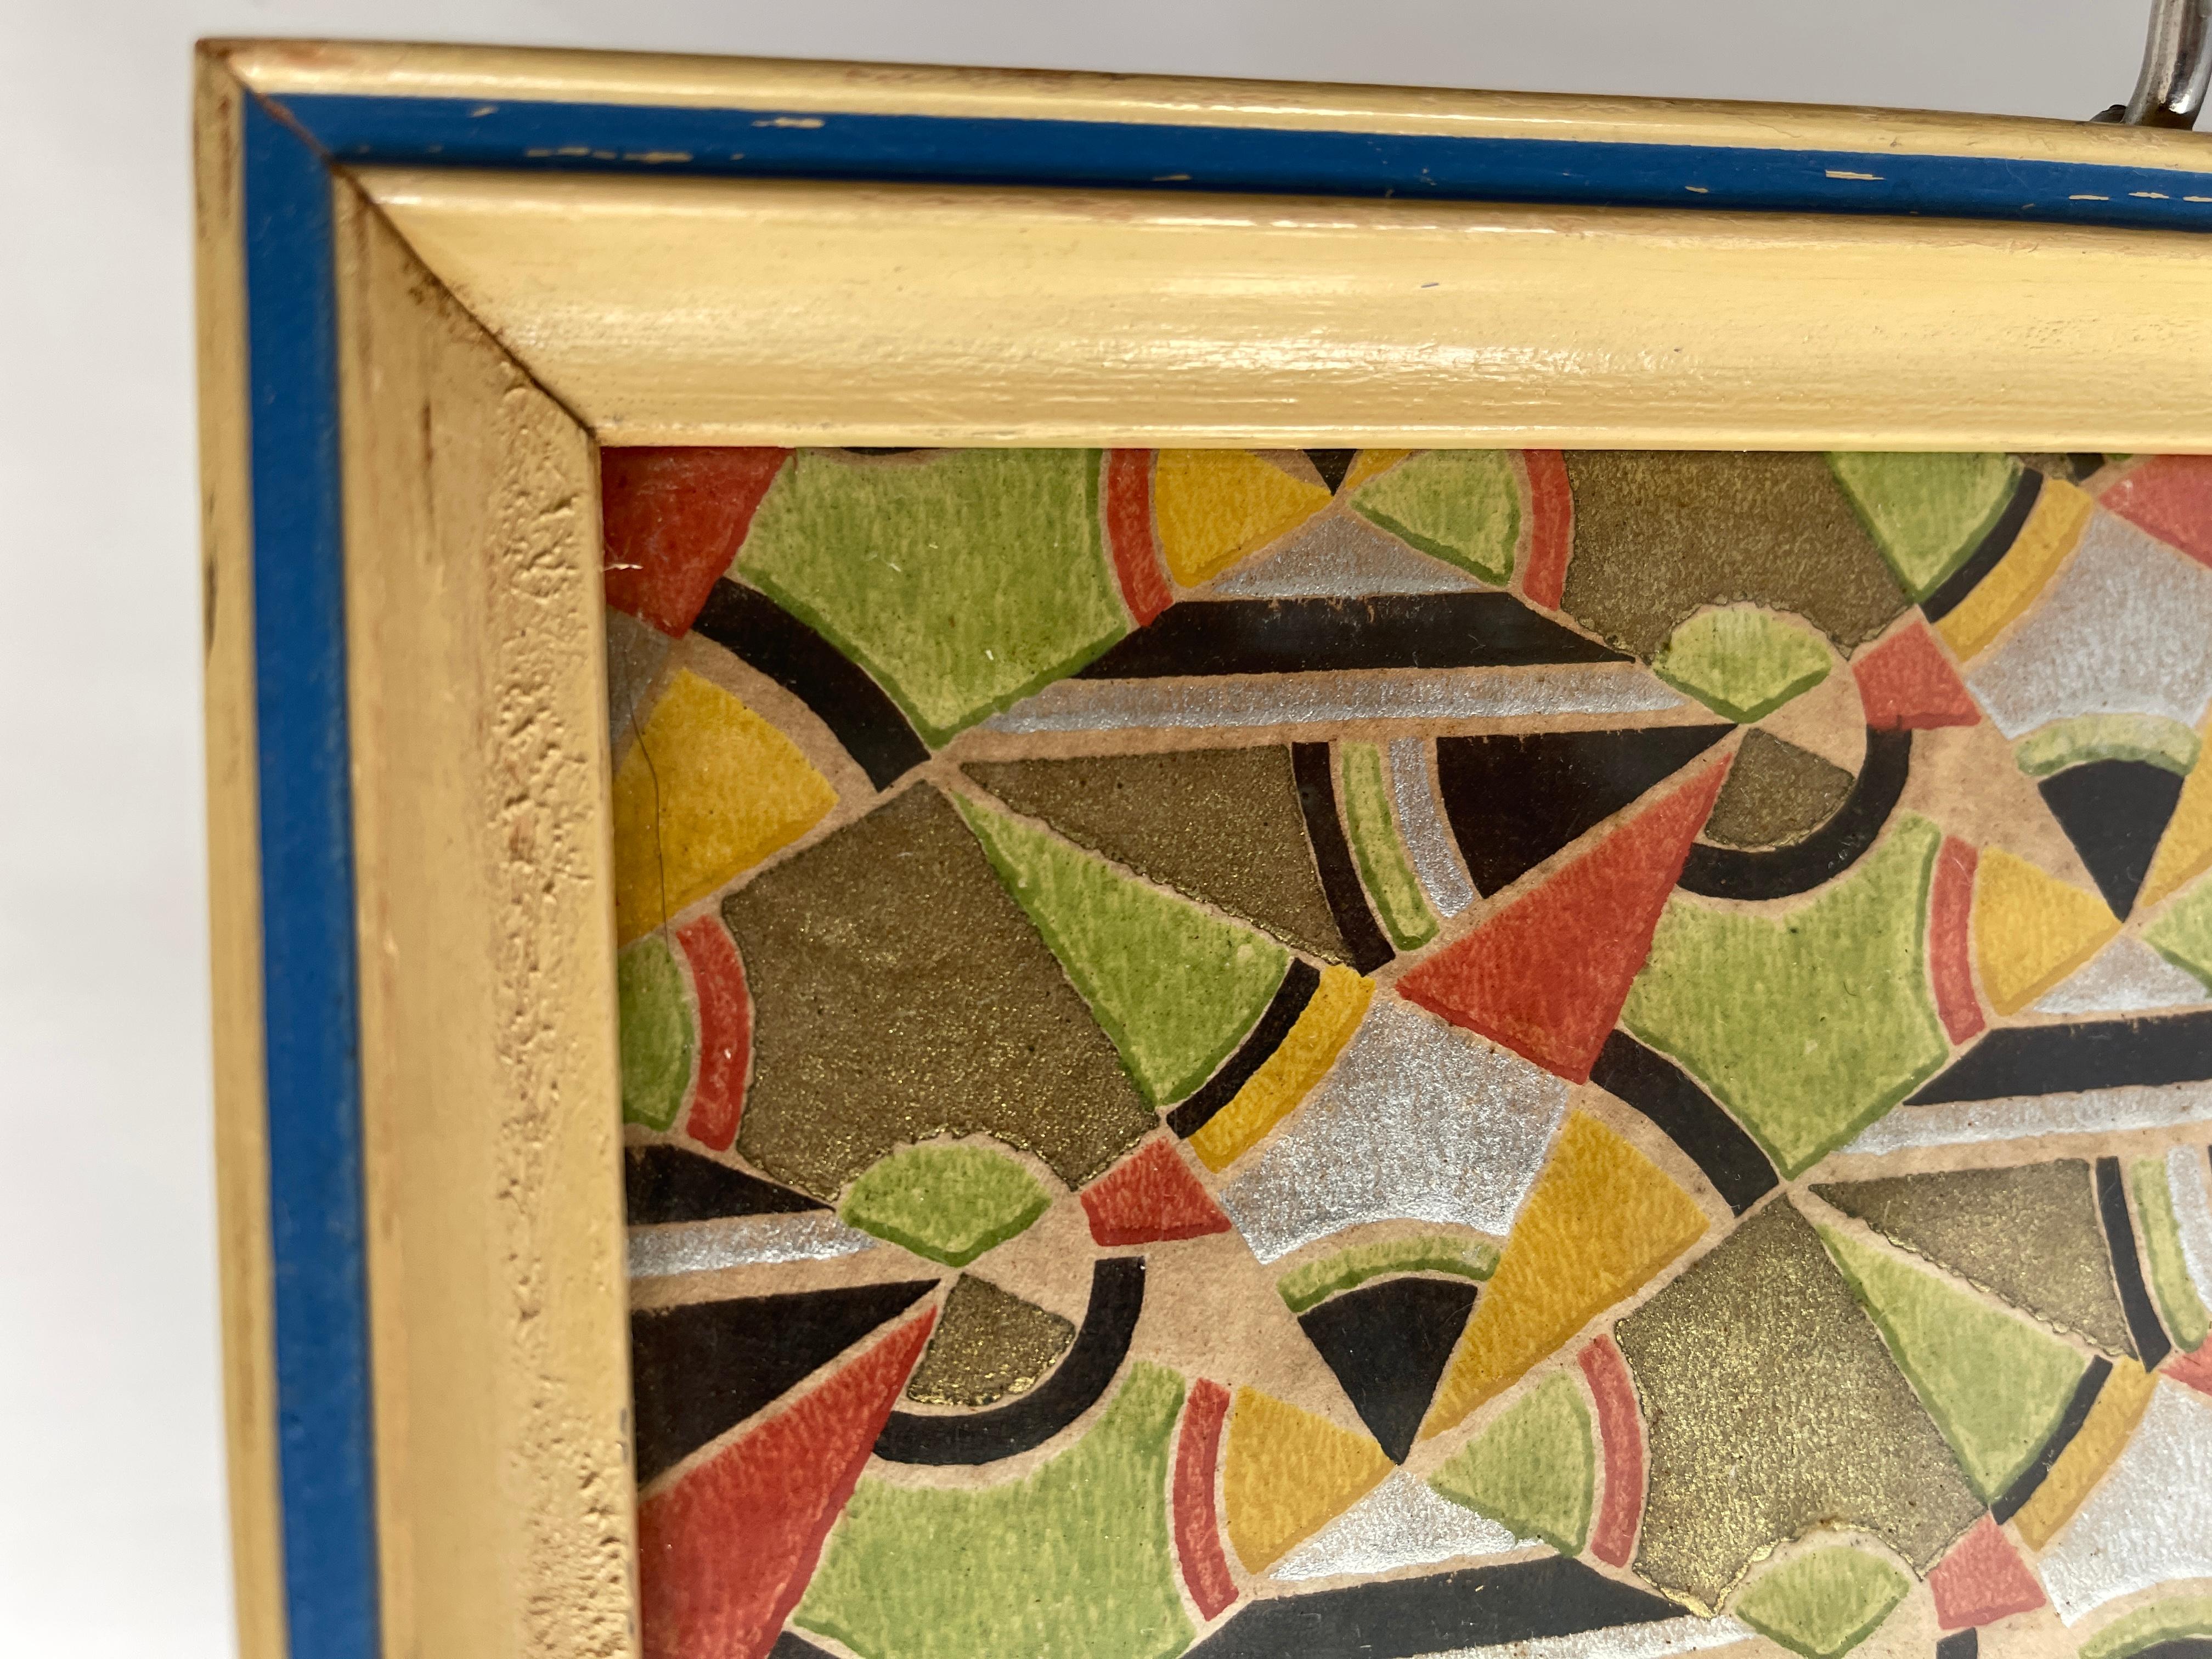 Plateau de service rectangulaire Art Déco à motif géométrique peint à la main sur papier encadré sous verre avec cadre en bois peint en bleu et ivoire. Une poignée en bois et chrome à chaque extrémité. Le cadre présente une certaine usure, comme le